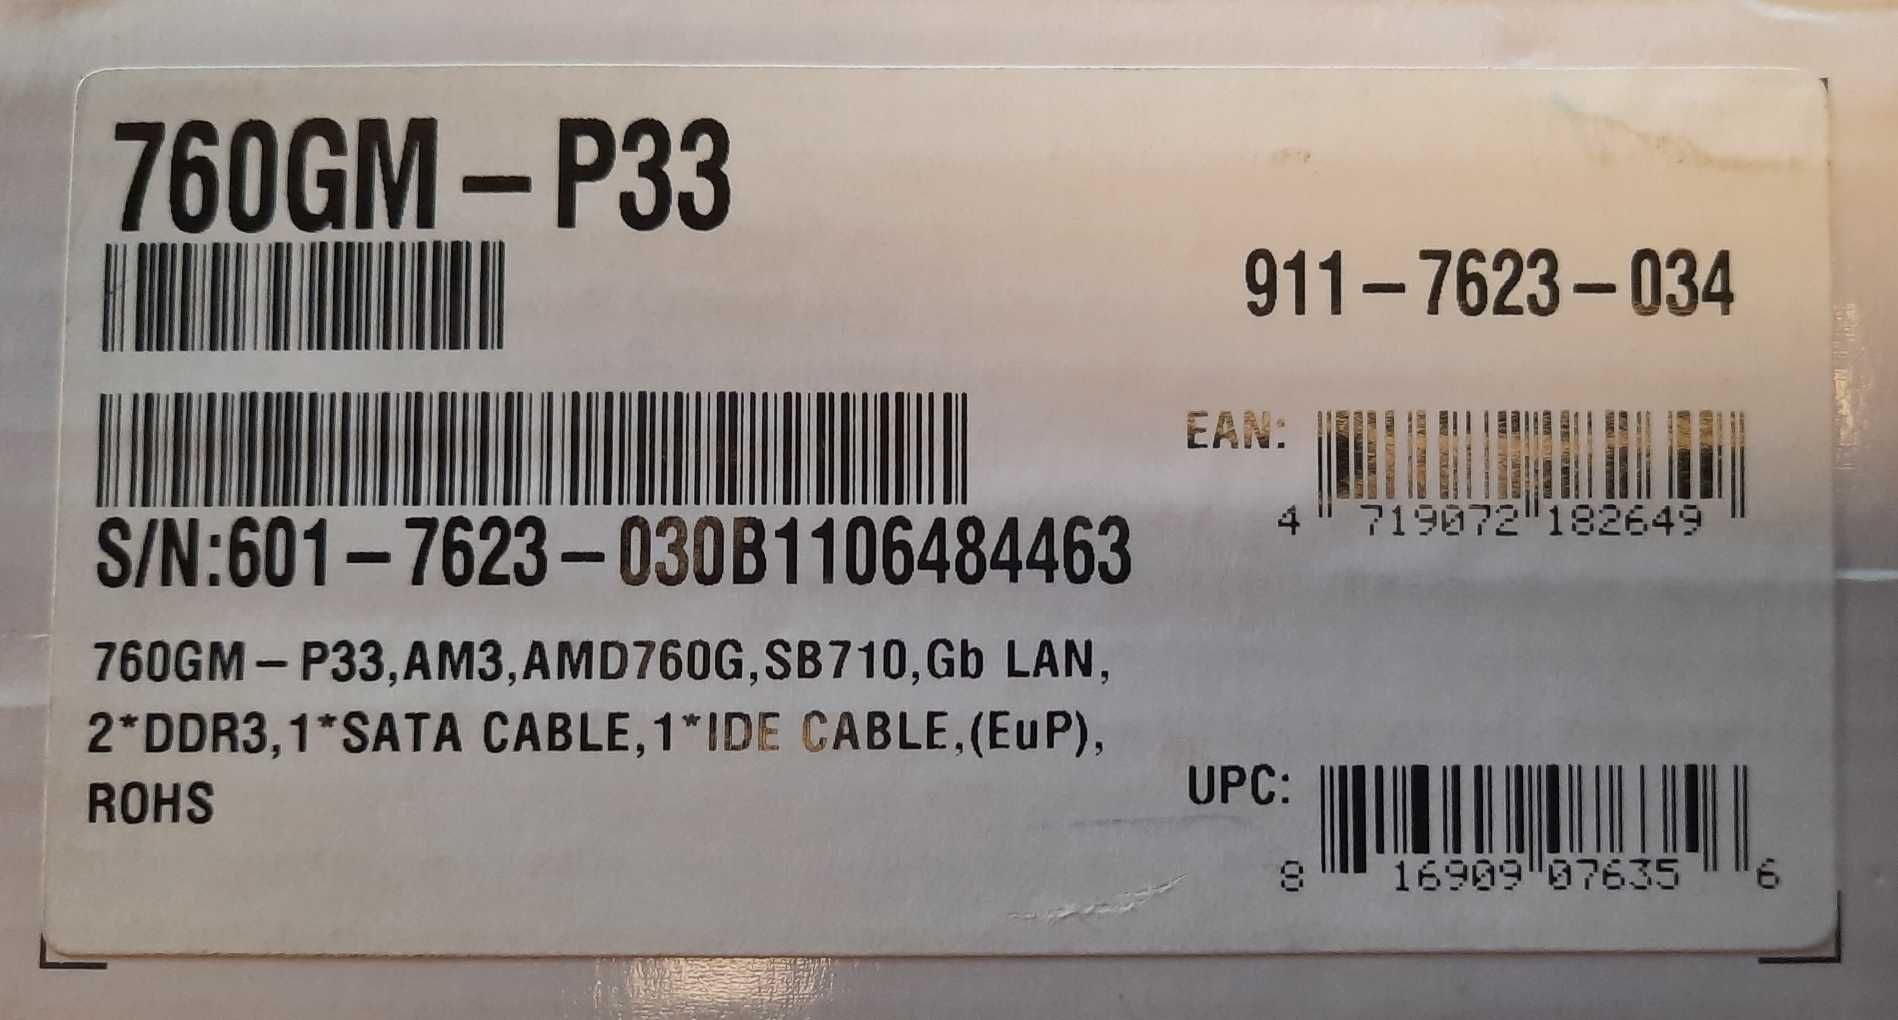 Płyta główna MSI 760GM -P33 z procesorem AMD Phenom II X4 840